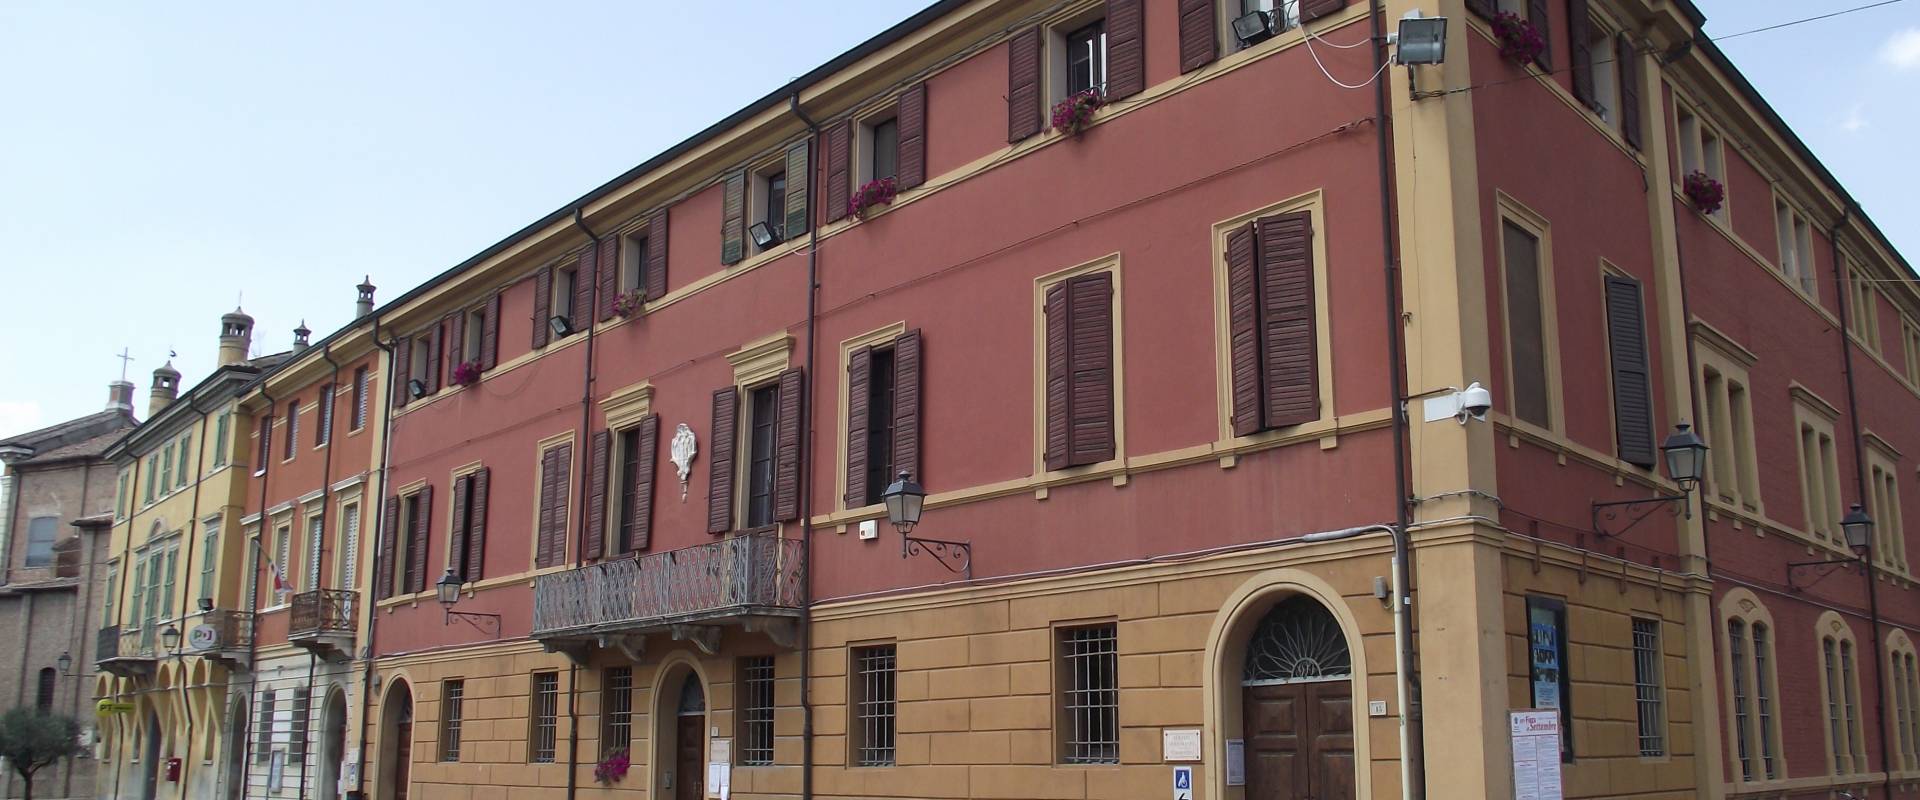 Palazzo Comunale di San Felice sul Panaro (MO) photo by Tommaso Trombetta